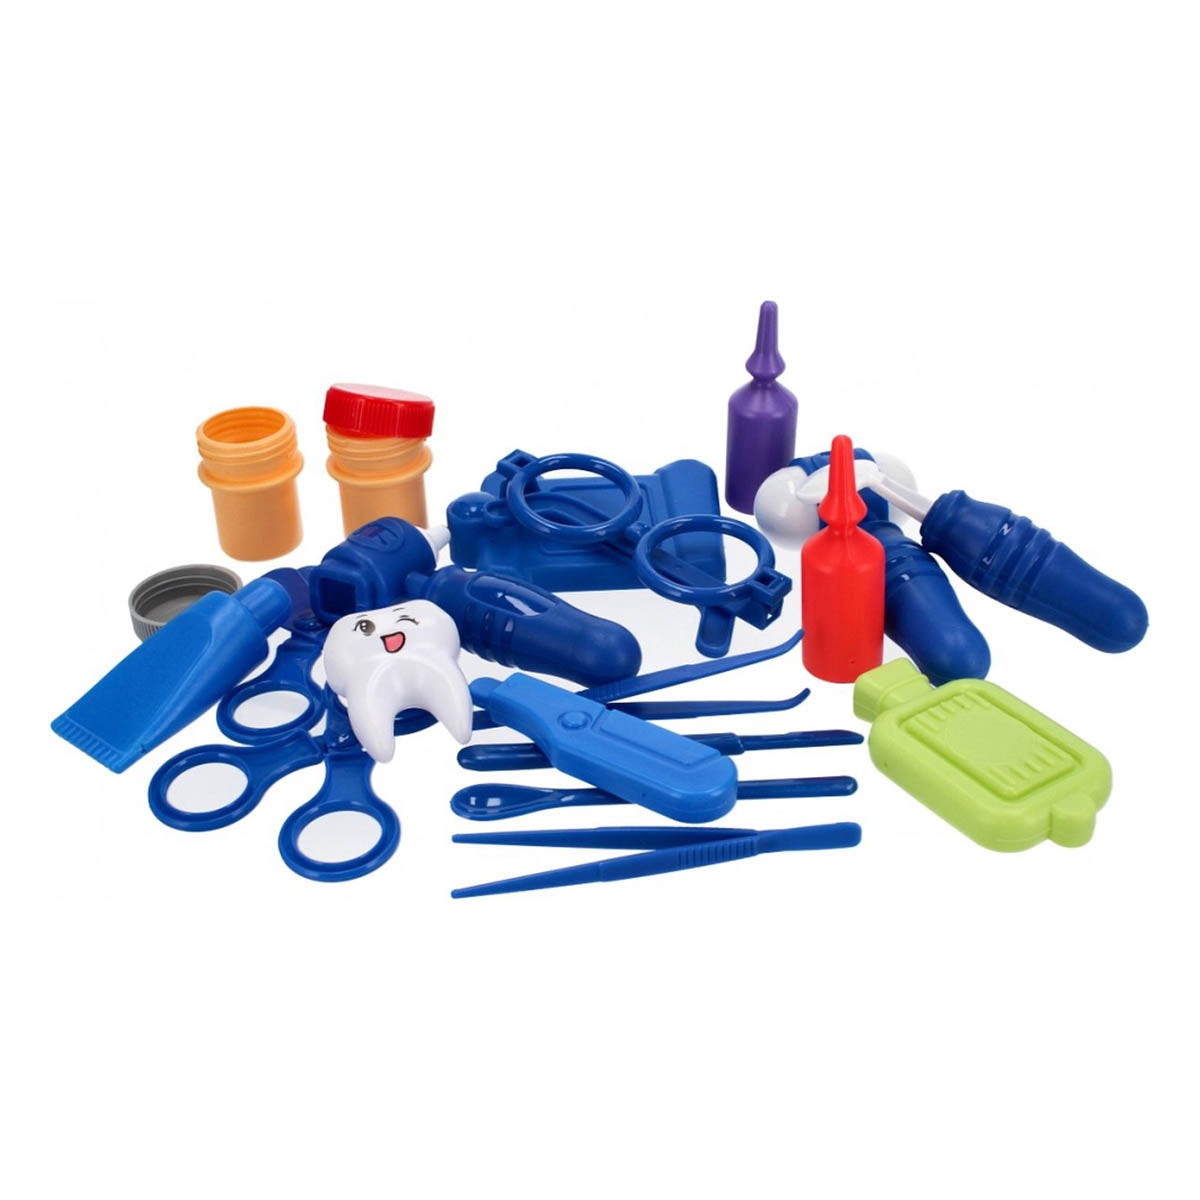 <tc>Ariko</tc>  Toy Suitcase Doctor 39 Teile - Blutdruckmessgerät, Schere, Medikamente, Untersuchungsutensilien und vieles mehr - praktischer Koffer zum Mitnehmen